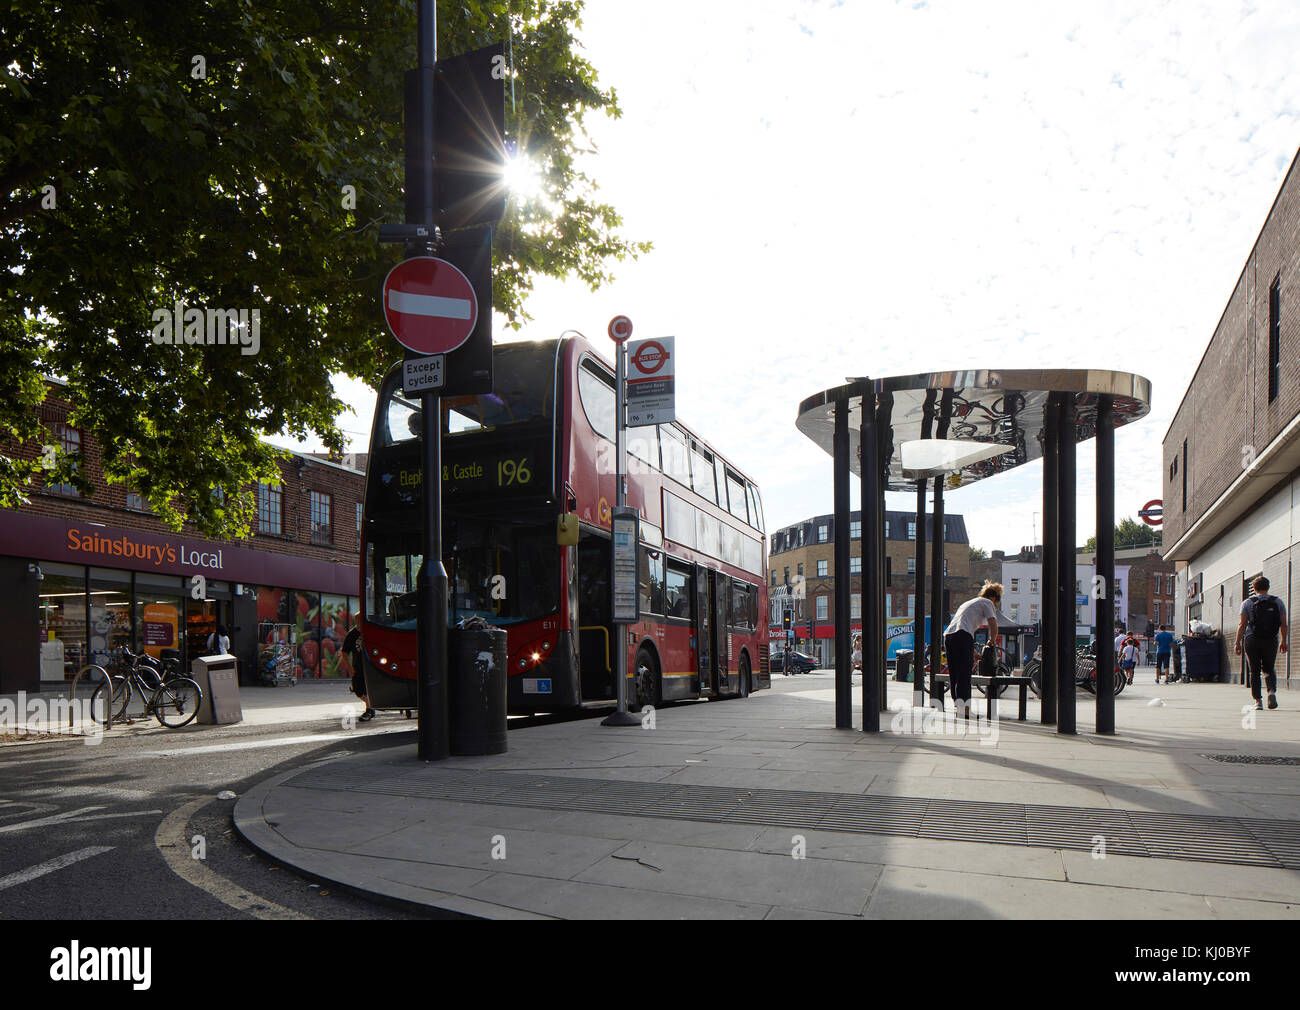 Binfield Road Bushaltestelle Vordach. Stockwell Rahmen Masterplan, London, Vereinigtes Königreich. Architekt: DSDHA, 2017. Stockfoto